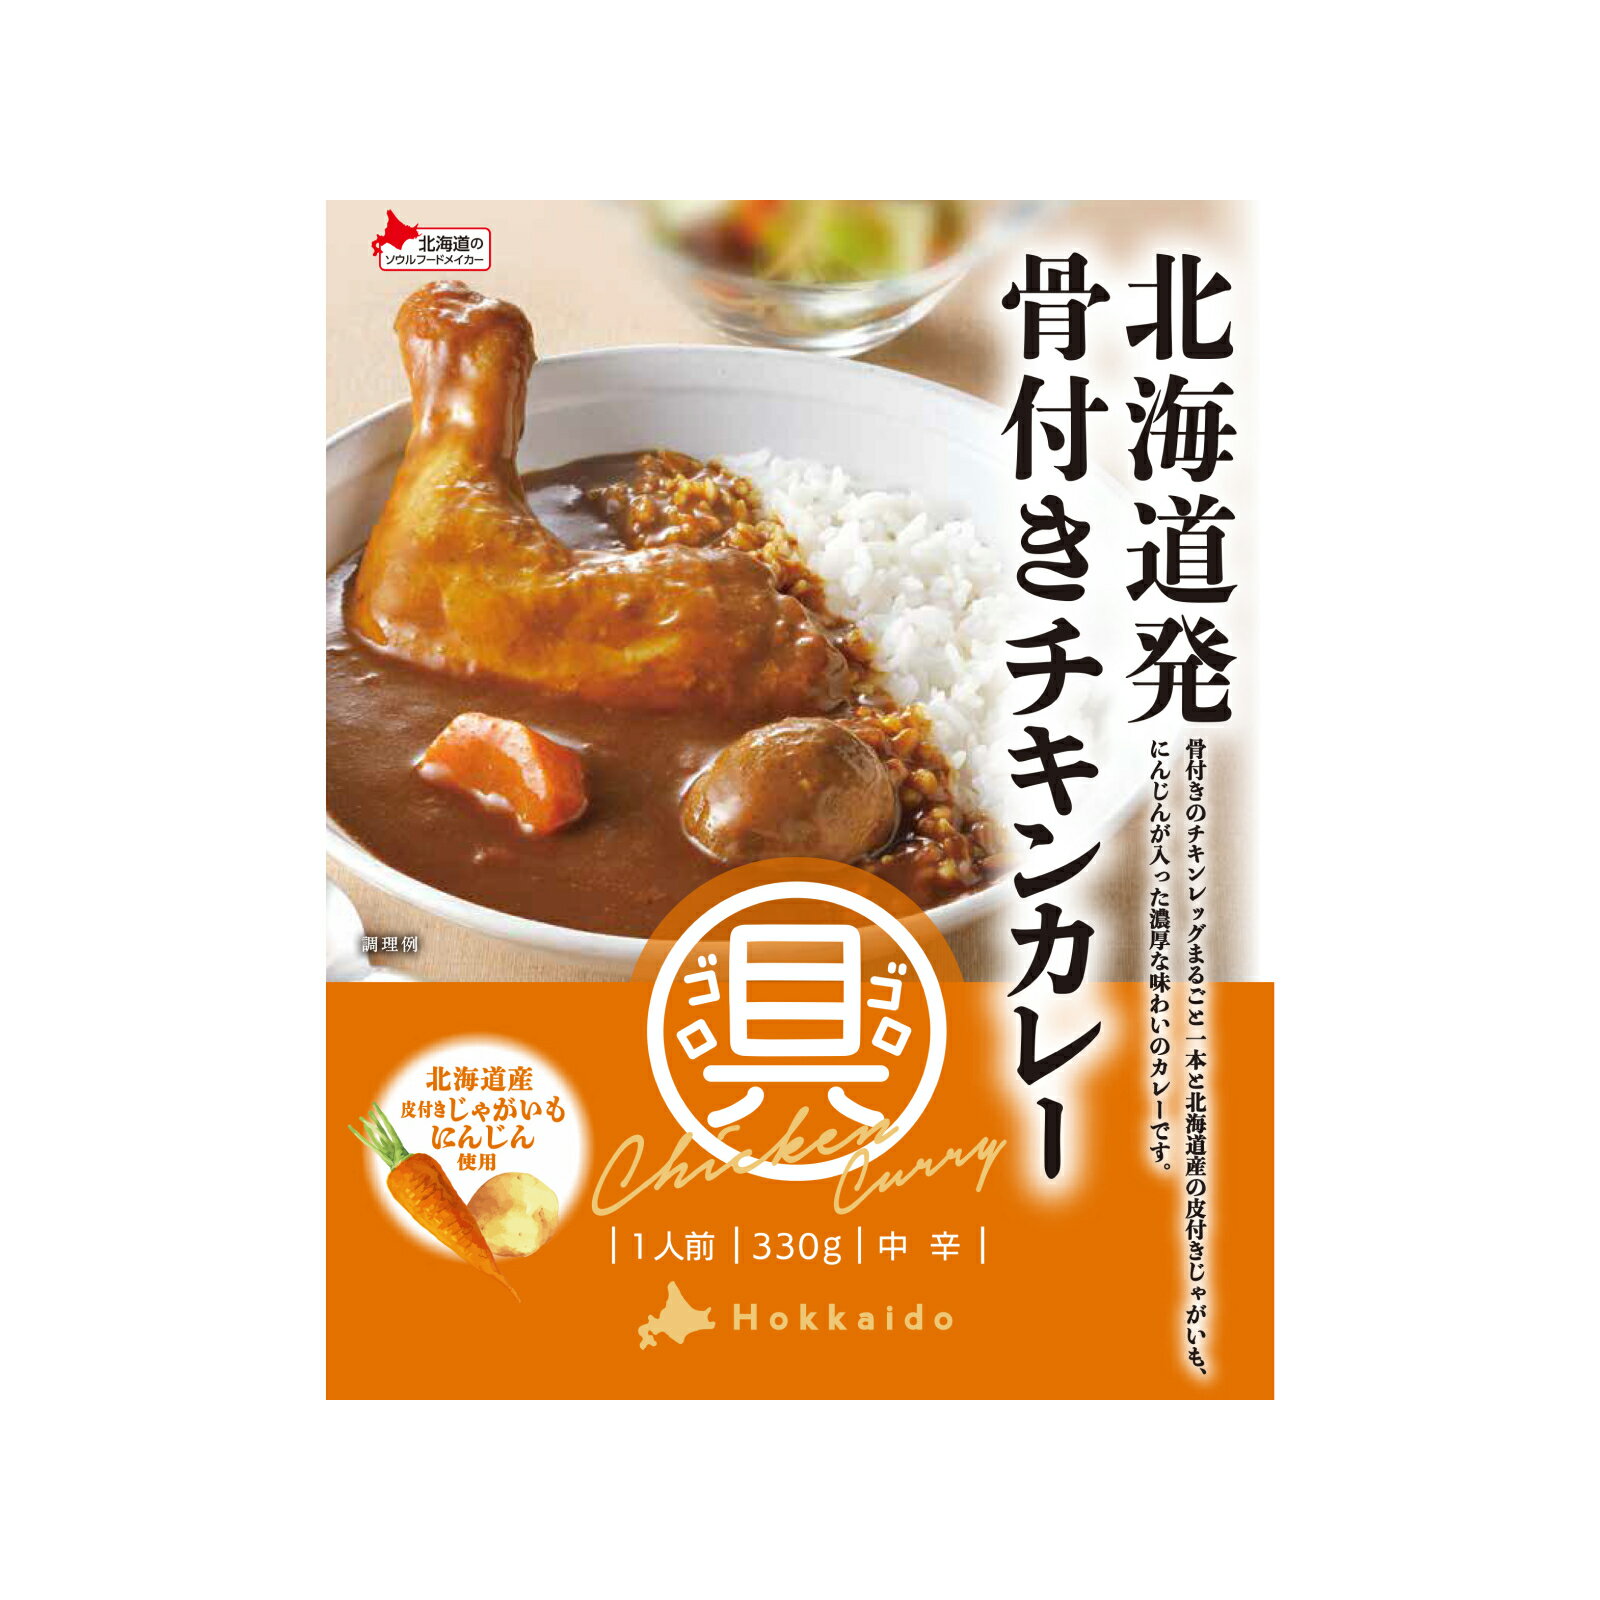 ベル食品北海道発骨付きチキンカレー330g【 ベル 北海道 カレー レトルト 】